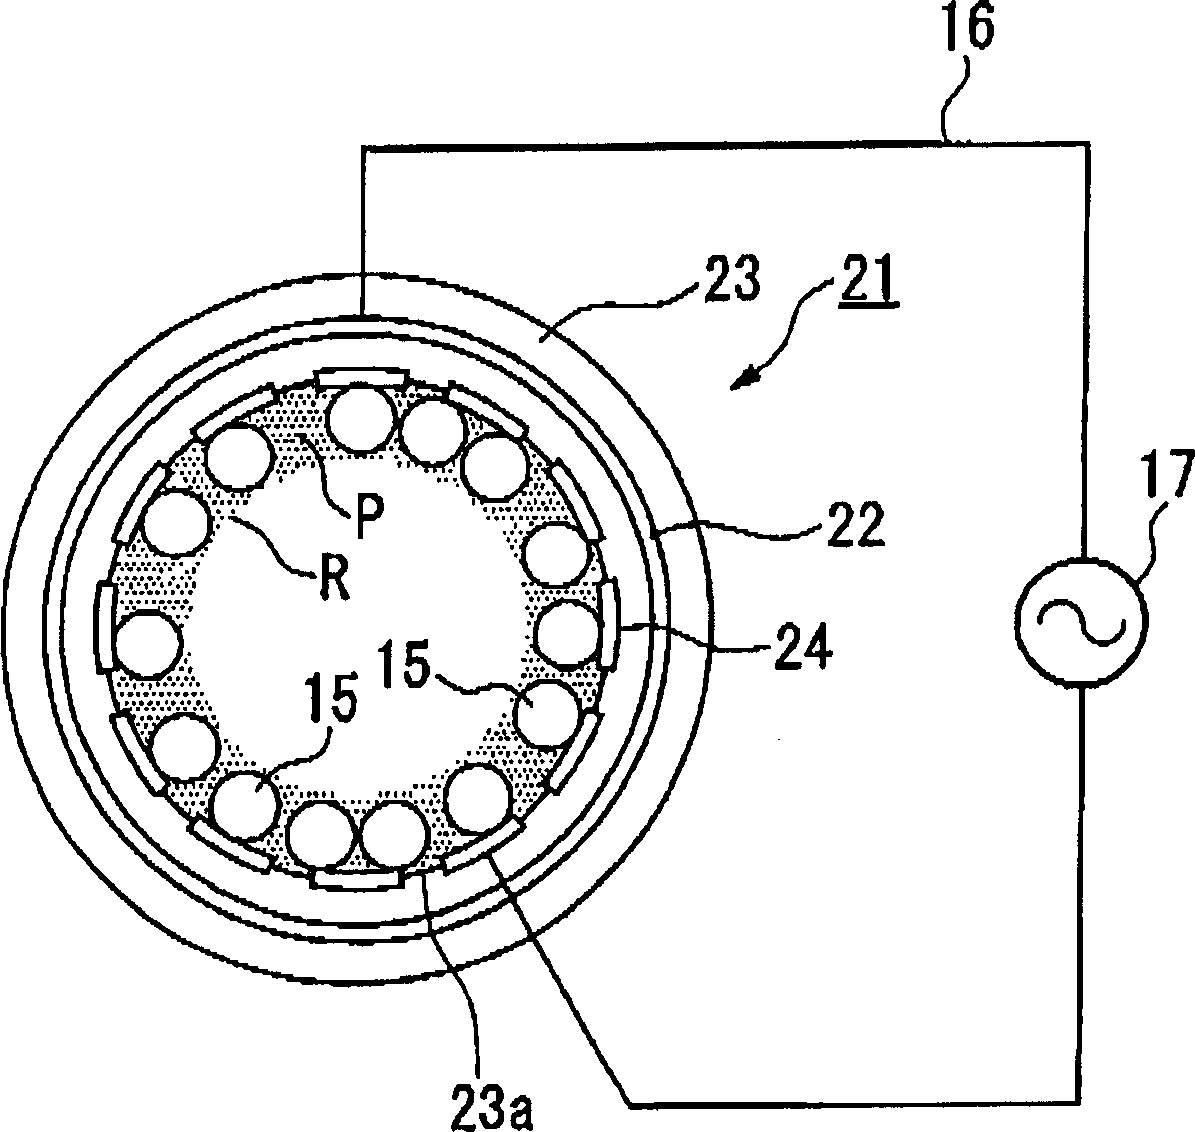 Method and apparatus for gas treatment using non-equilibrium plasma